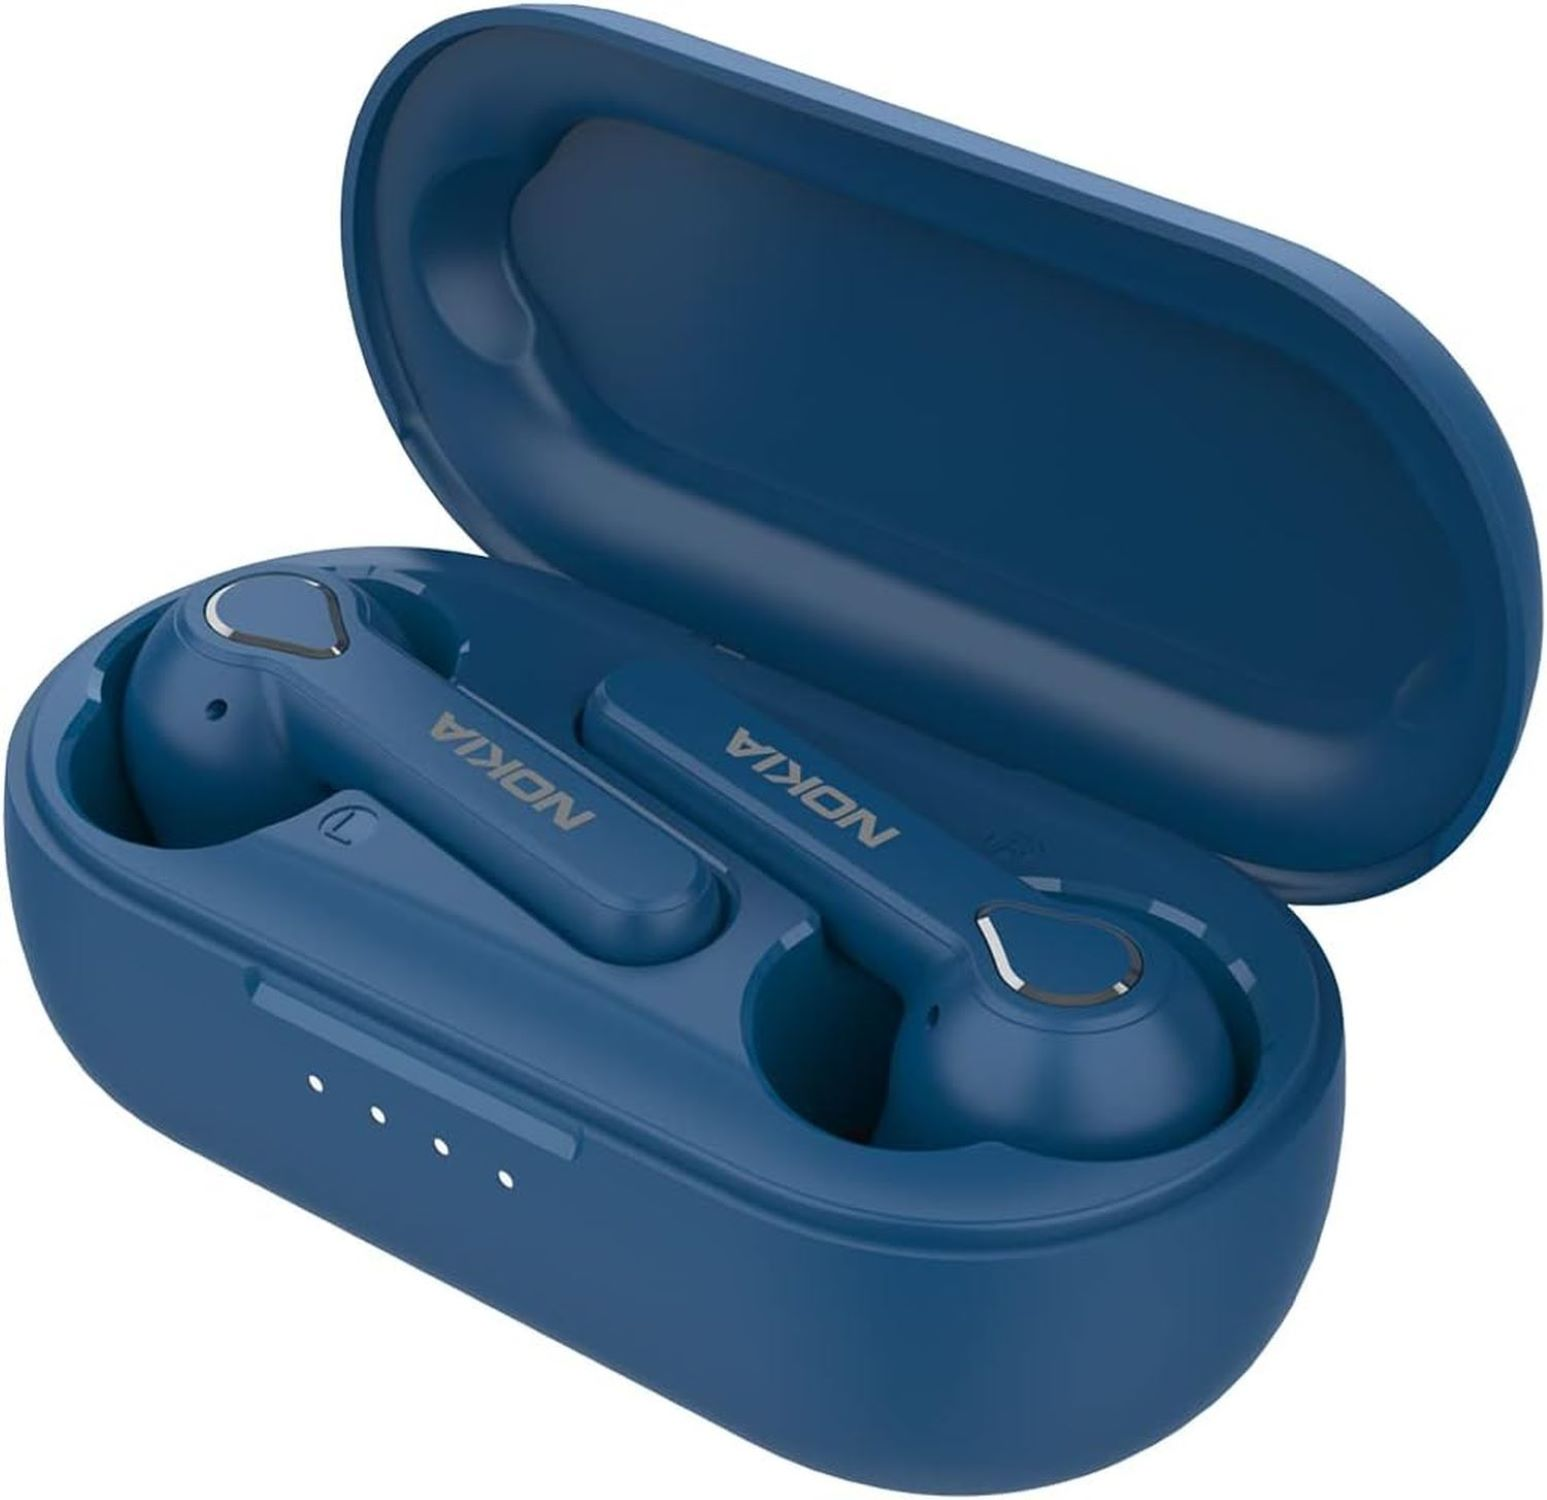 NOKIA BH-205, In-ear Bluetooth kopfhörer Blau